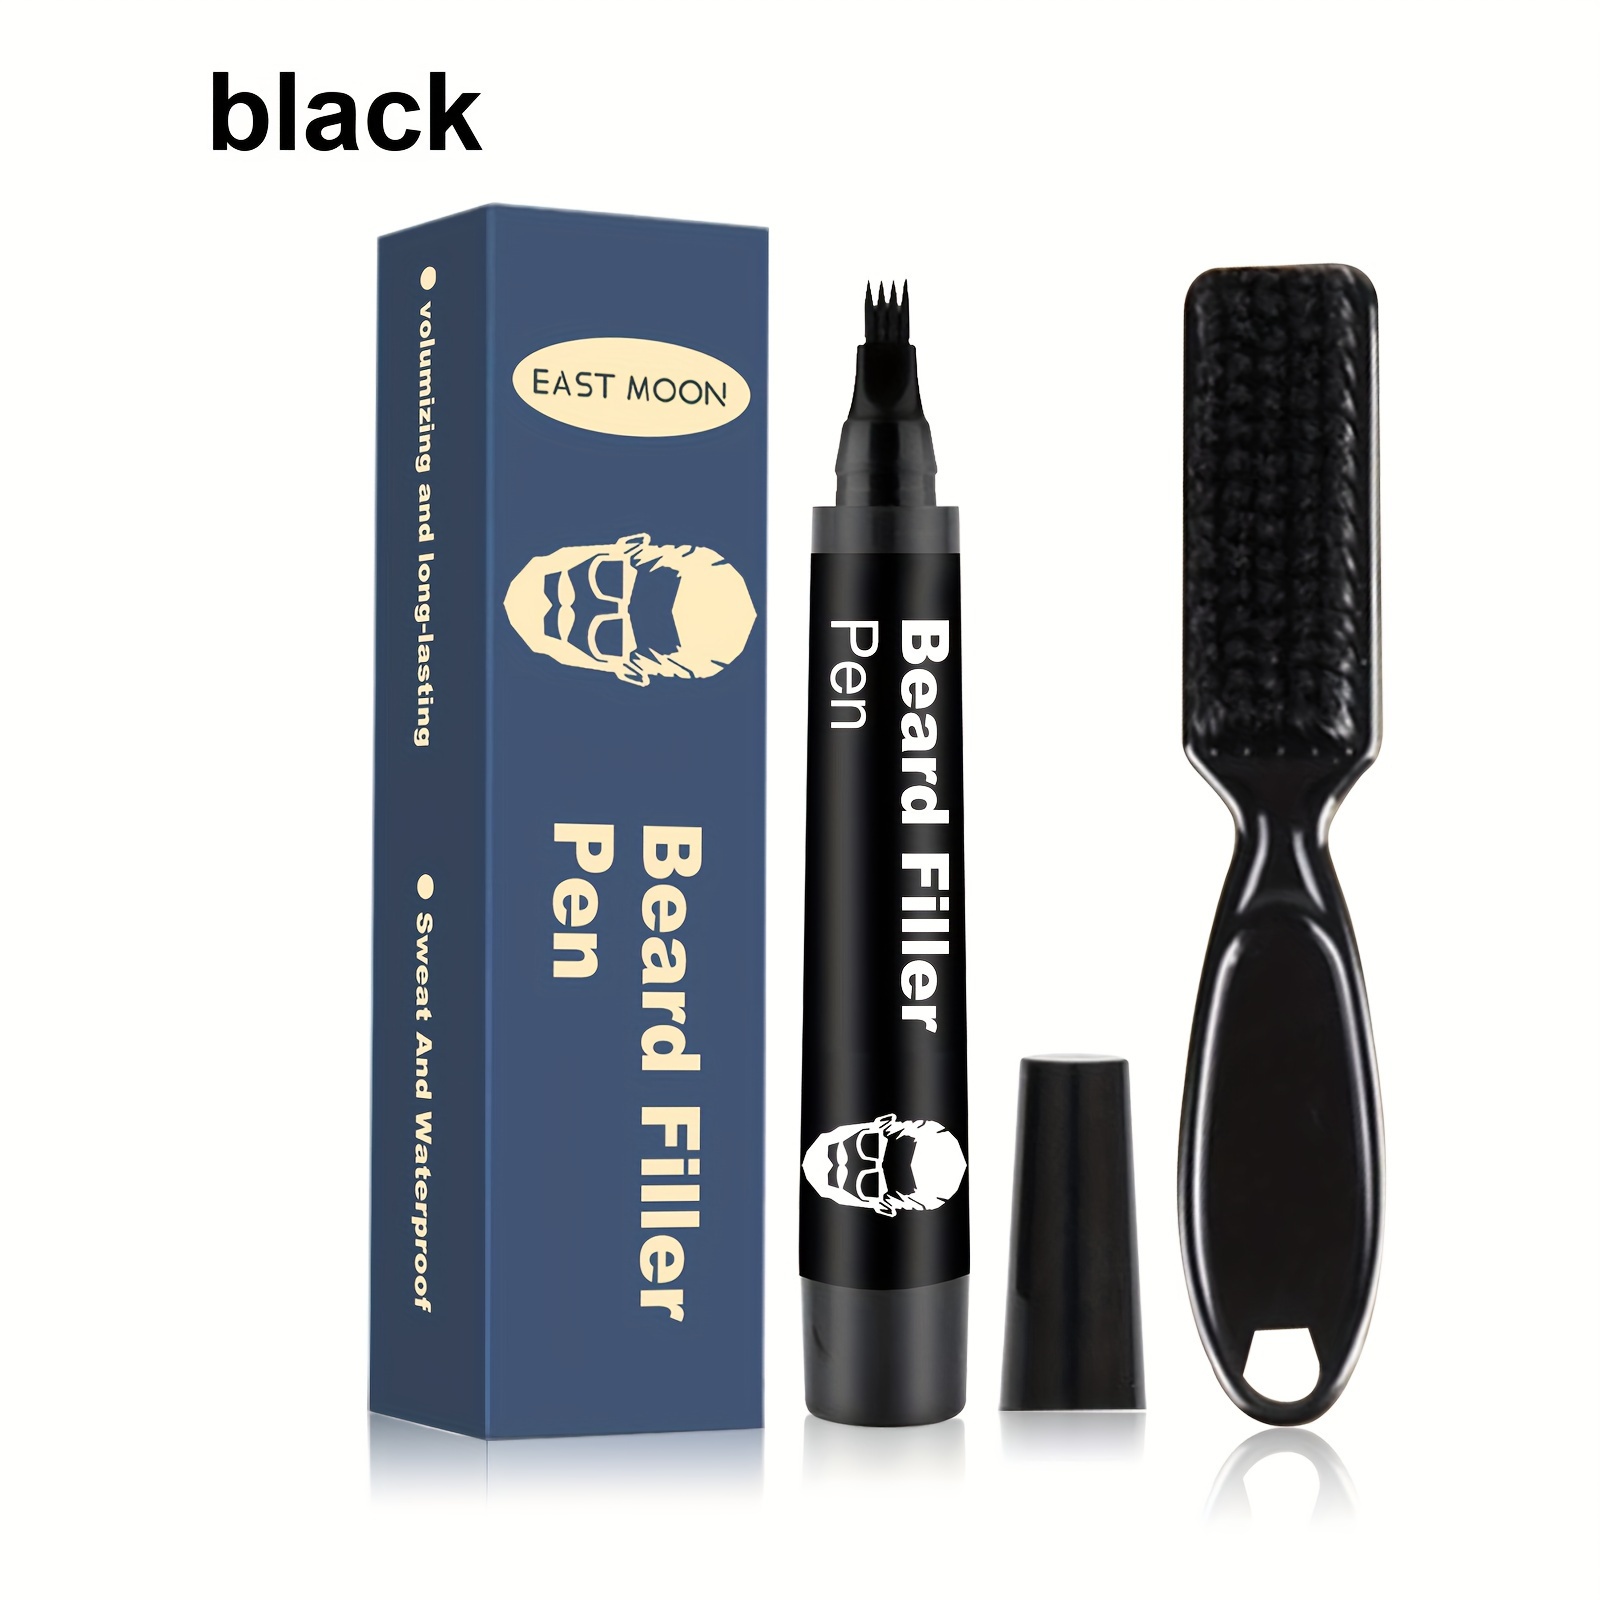 Bolígrafo de relleno para barba 2 en 1 cabezal doble con Ndcxsfigh cepillo  herramientas de peinado masculinas duraderas